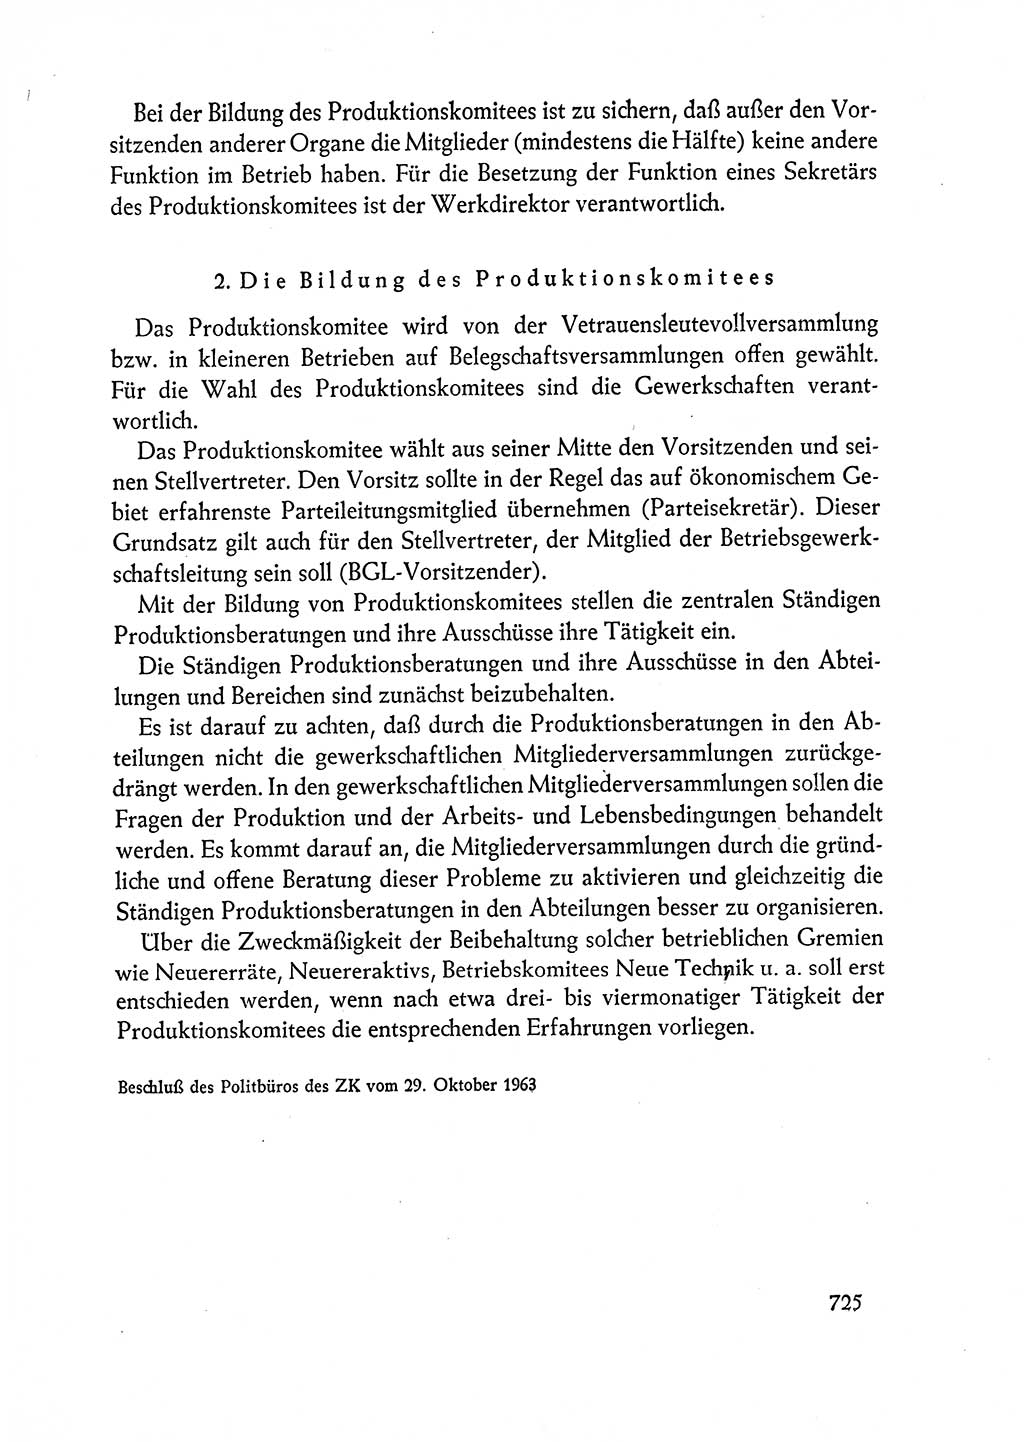 Dokumente der Sozialistischen Einheitspartei Deutschlands (SED) [Deutsche Demokratische Republik (DDR)] 1962-1963, Seite 725 (Dok. SED DDR 1962-1963, S. 725)